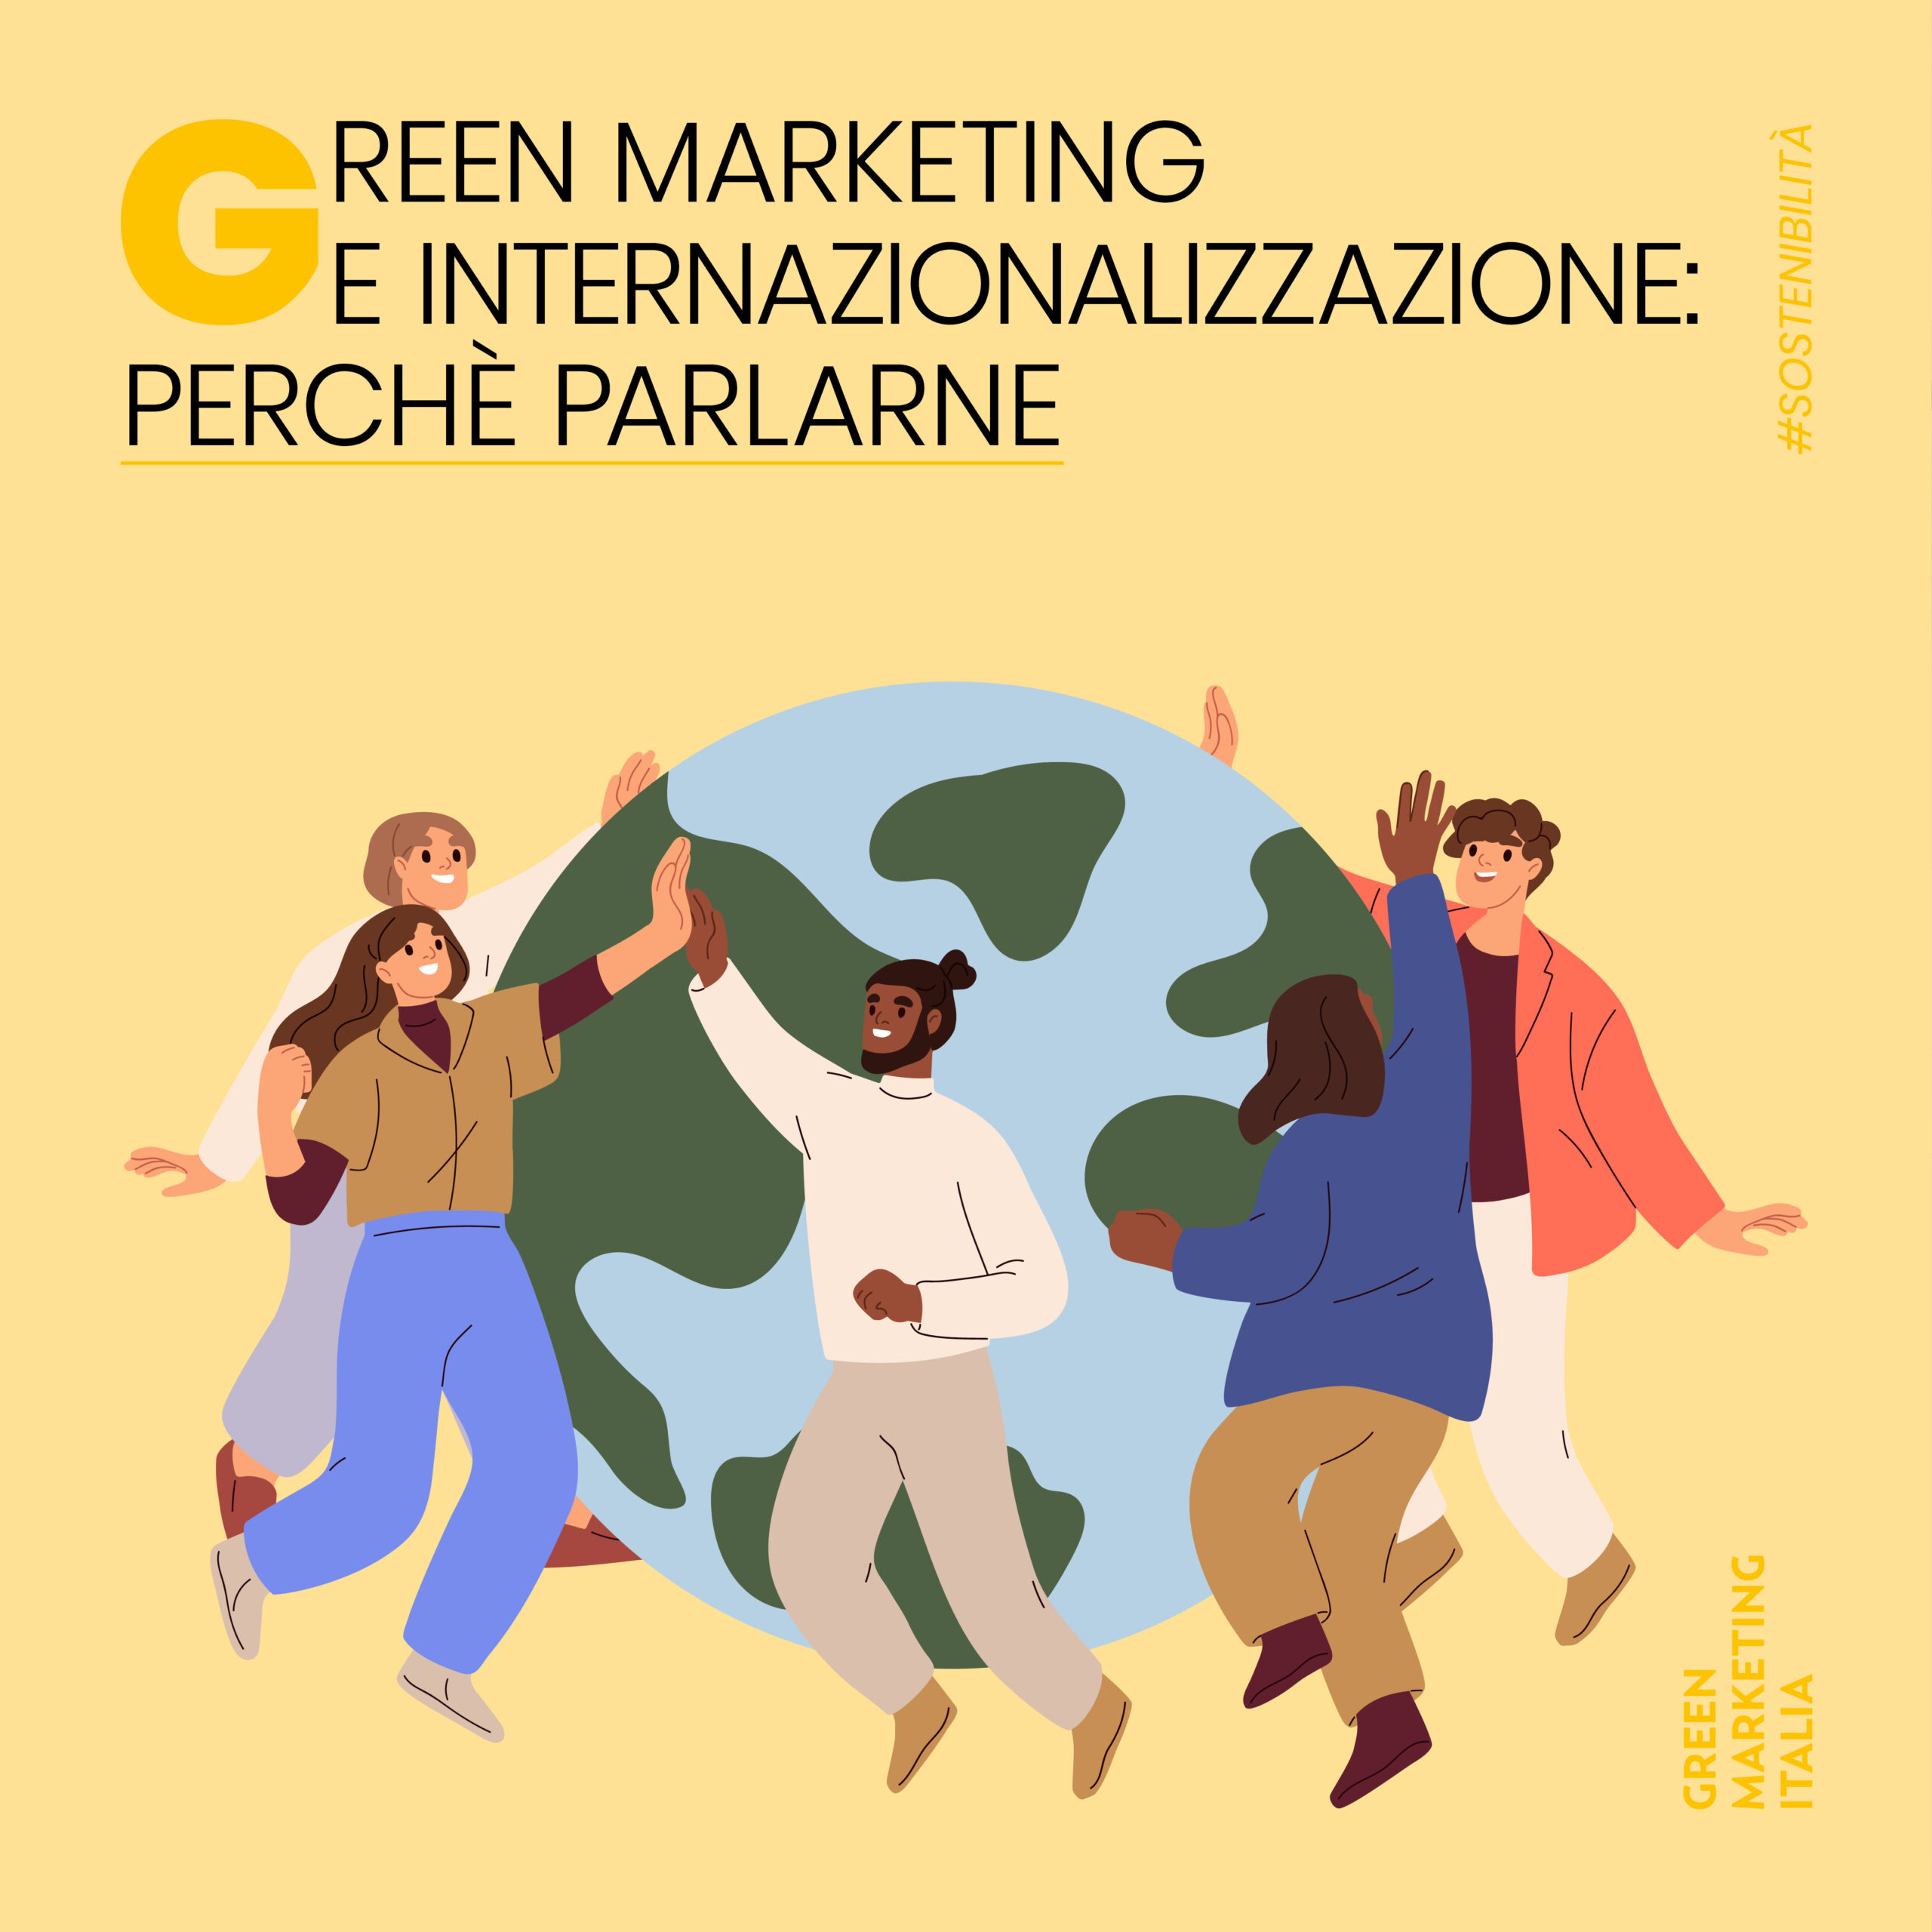 Green marketing e internaizonalizzazione